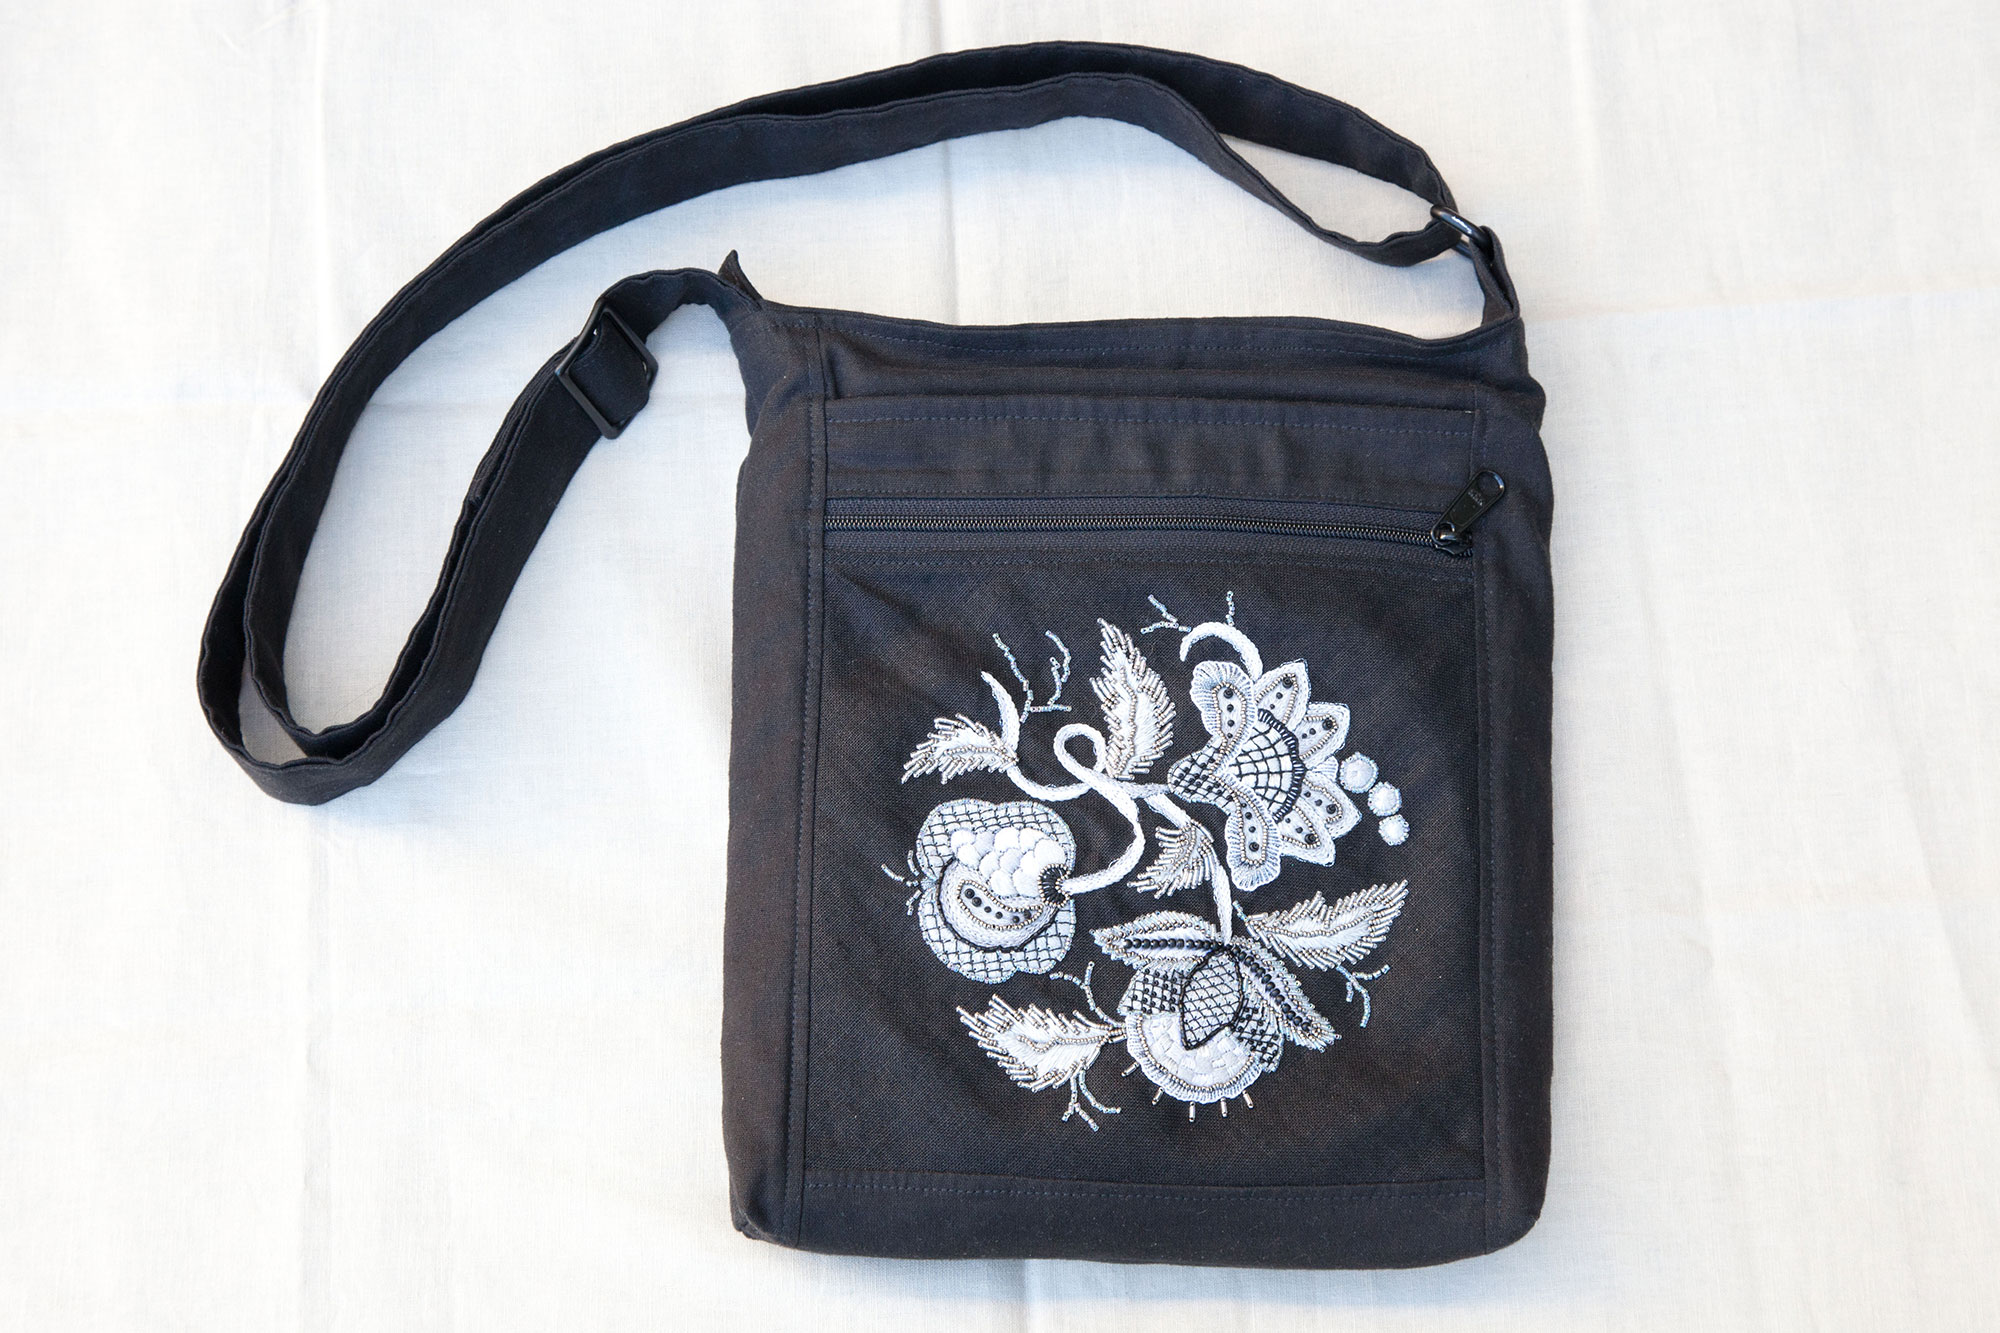 Embroidered hangbag